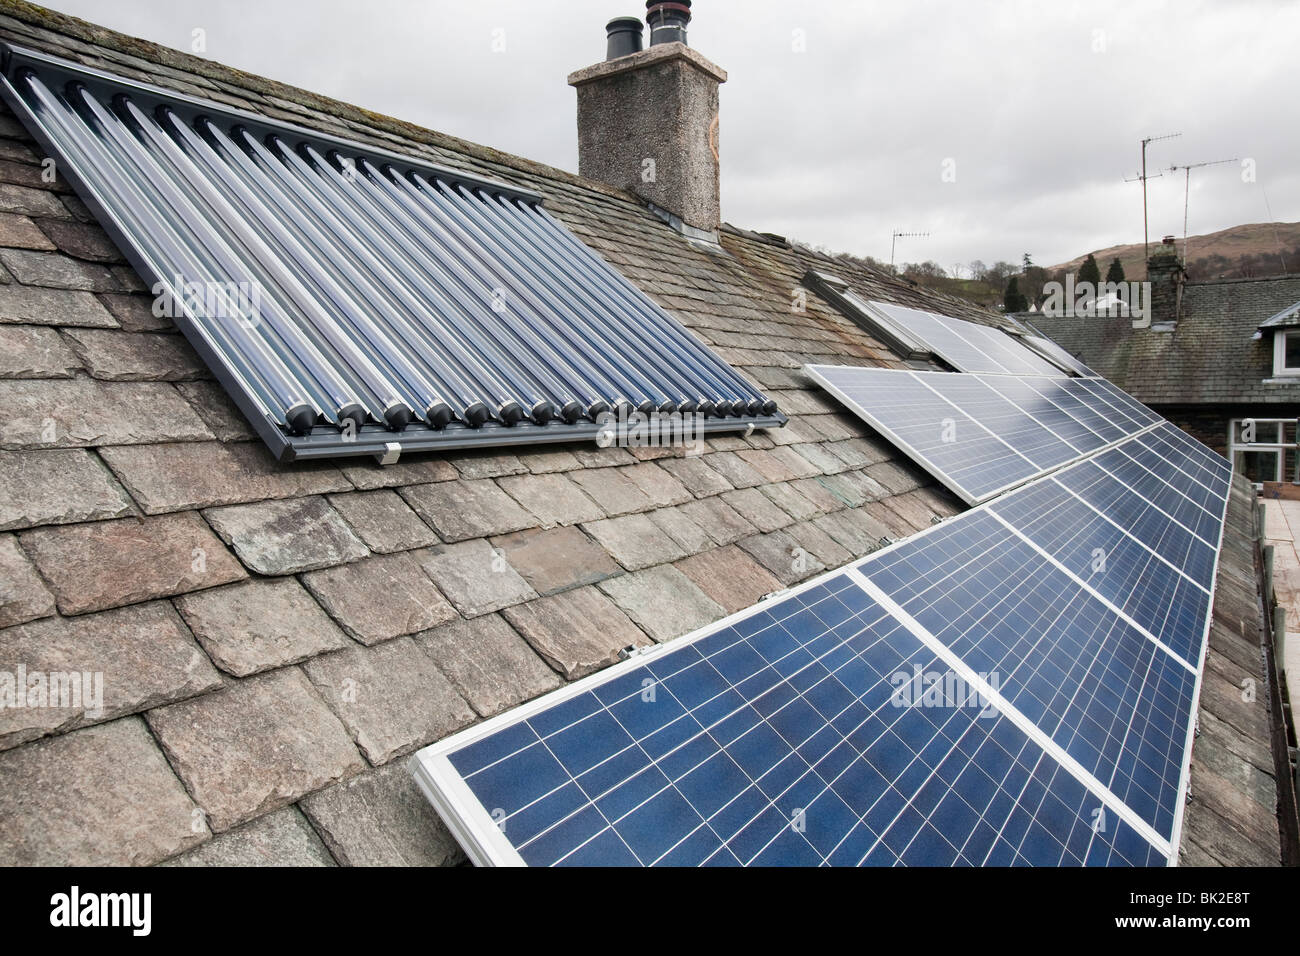 Panneaux solaires de production d'électricité photovoltaïque et eau chaude solaire panneaux sur un toit de maison à Ambleside, Cumbria, Royaume-Uni. Banque D'Images